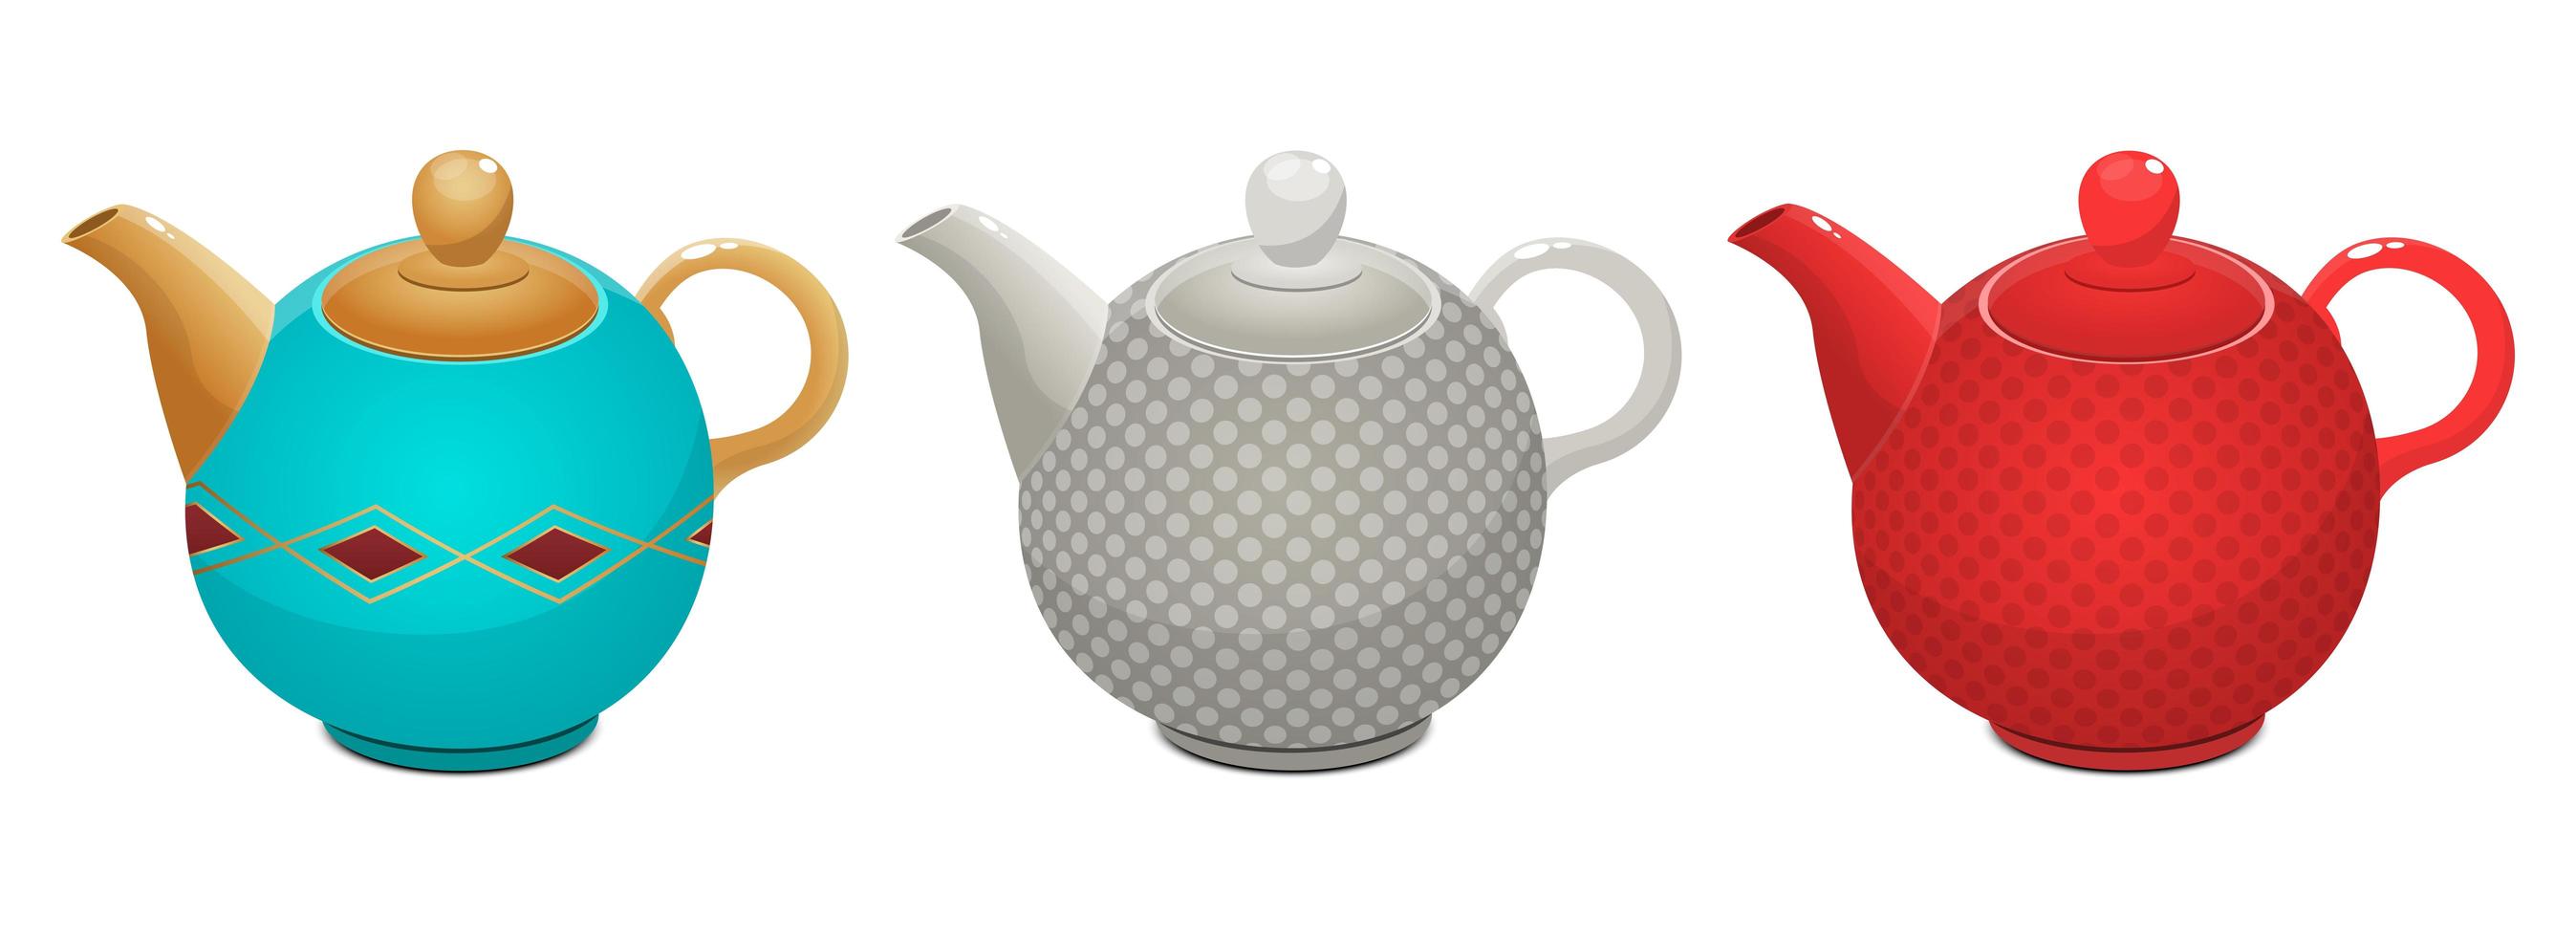 Tea kettle set isolated vector